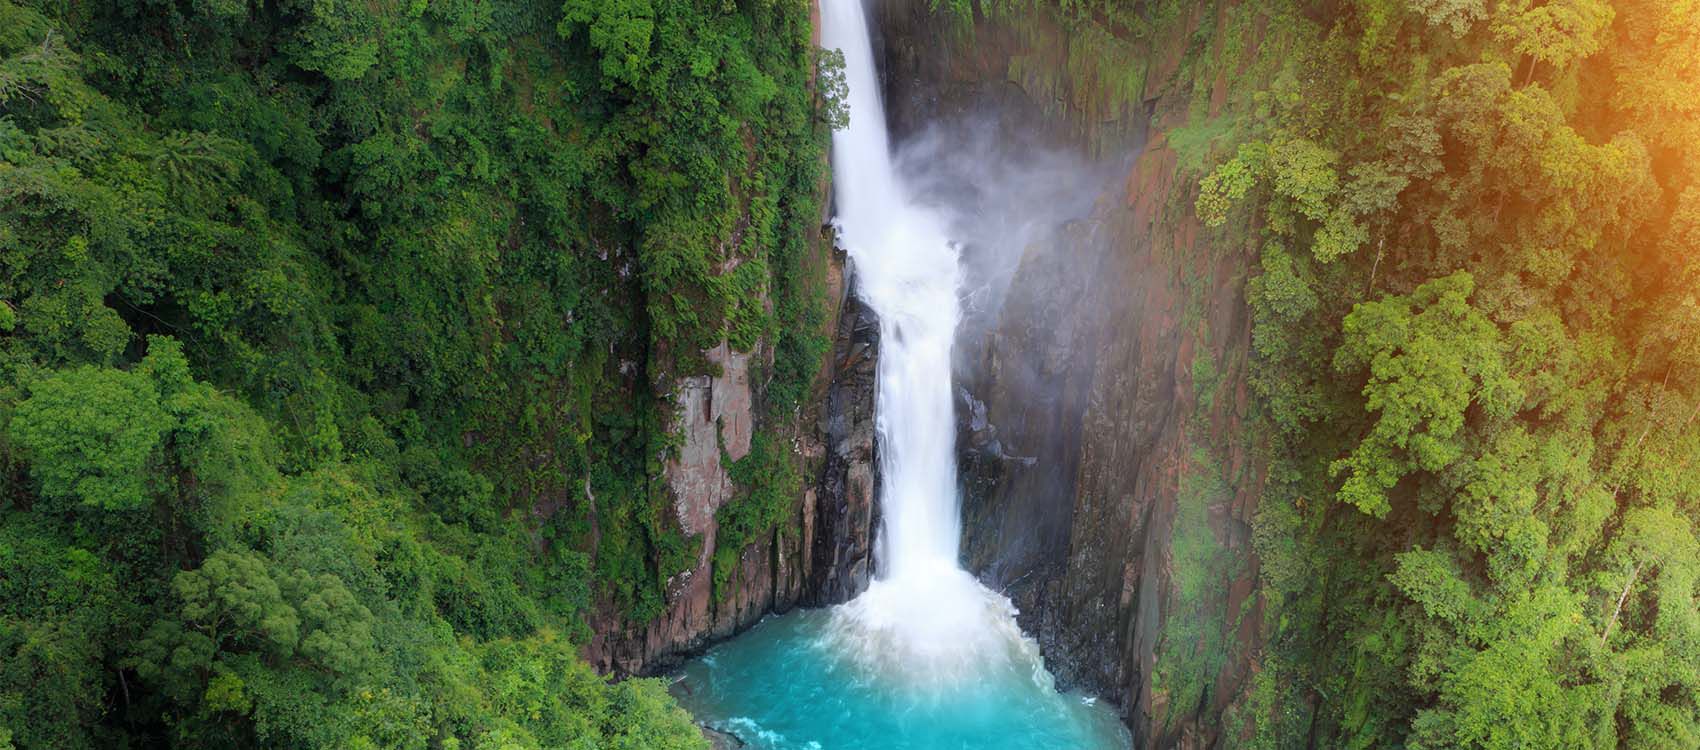 aqua waterfall cuts through tropical forest cliff